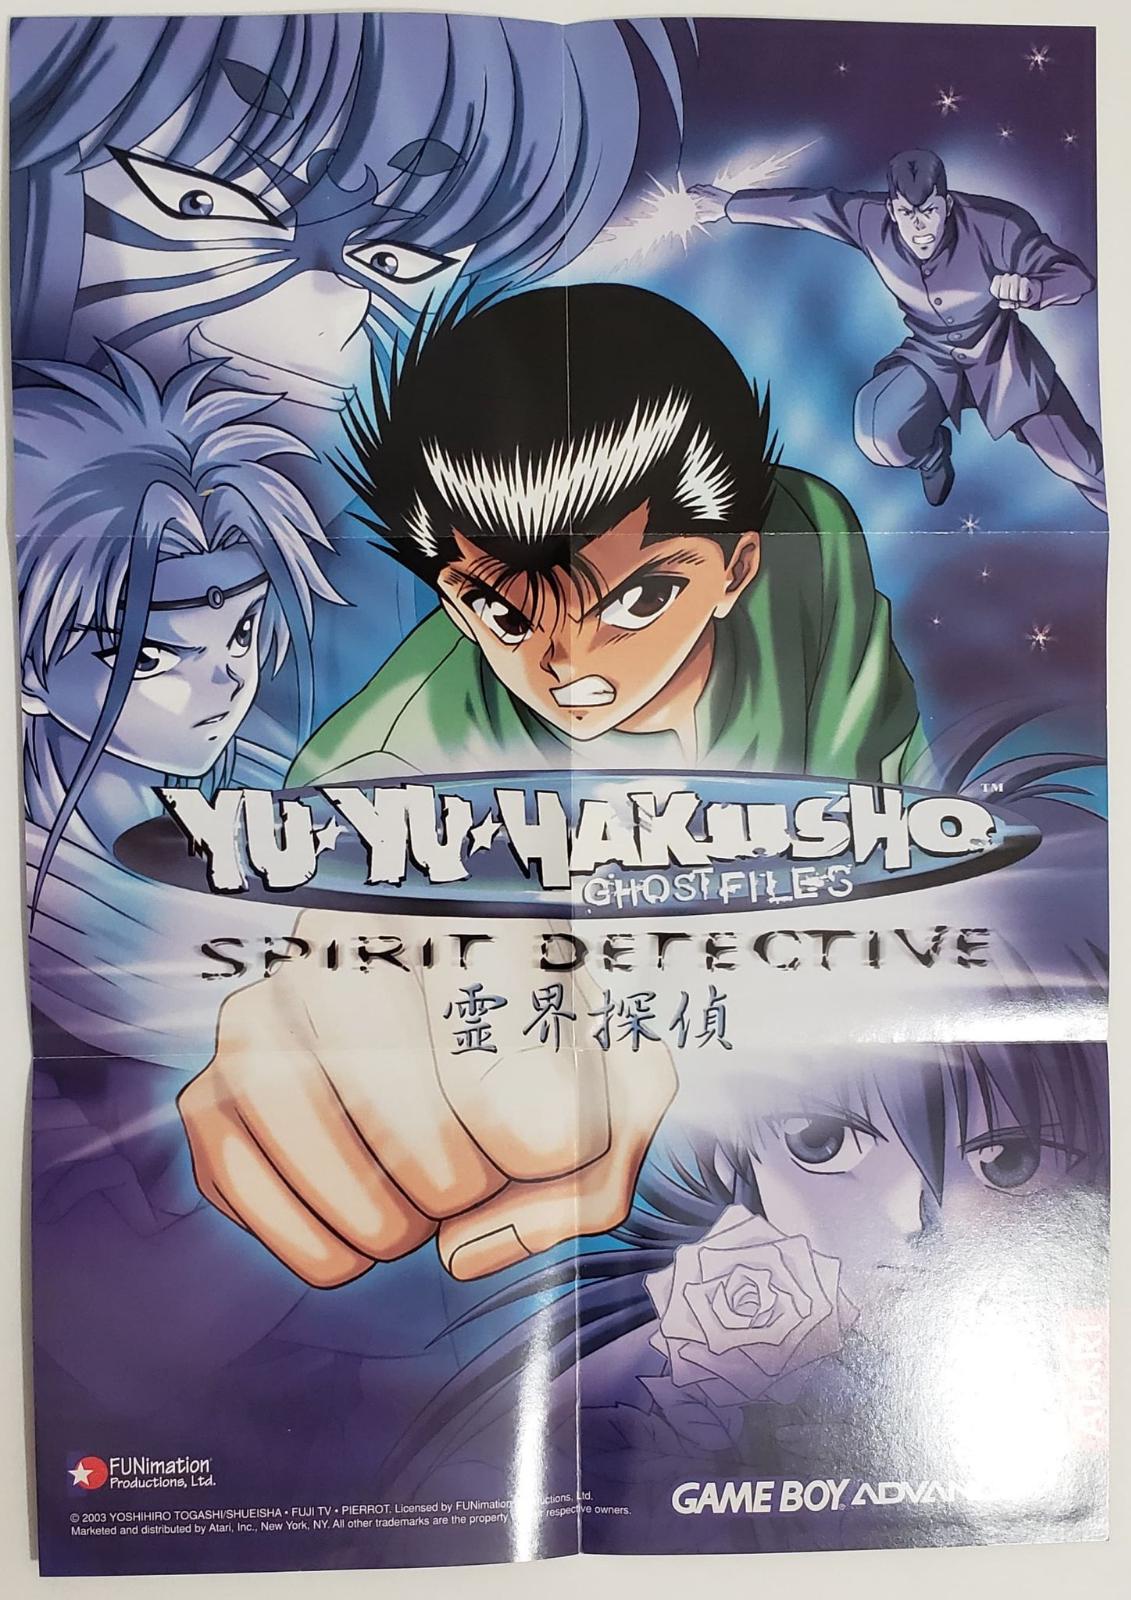 Is the anime 'Spirit Detective Yakumo' worth watching? - Quora